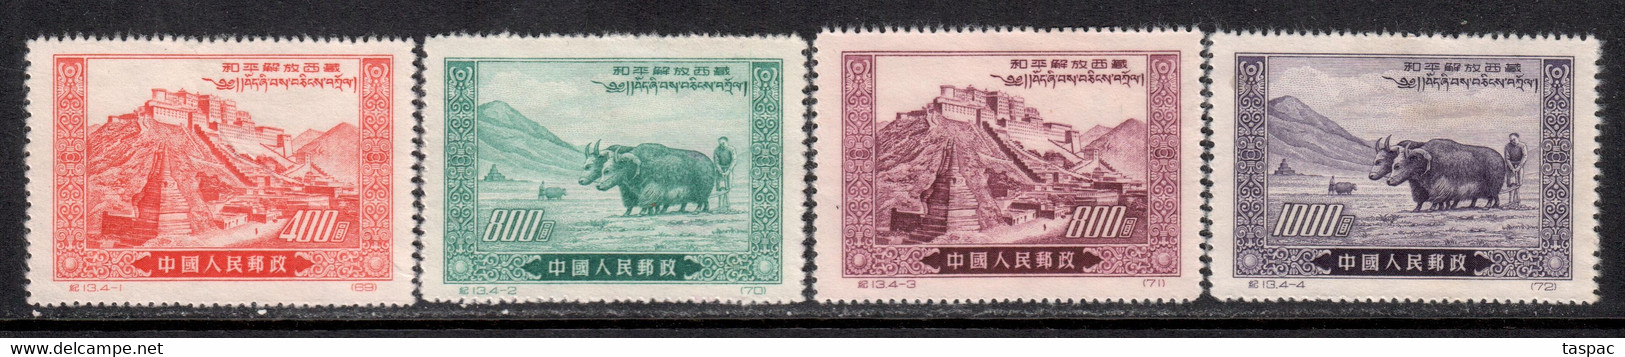 China P.R. 1952 Mi# 137-140 II (*) Mint No Gum, Hinged - Reprints - Liberation Of Tibet - Official Reprints